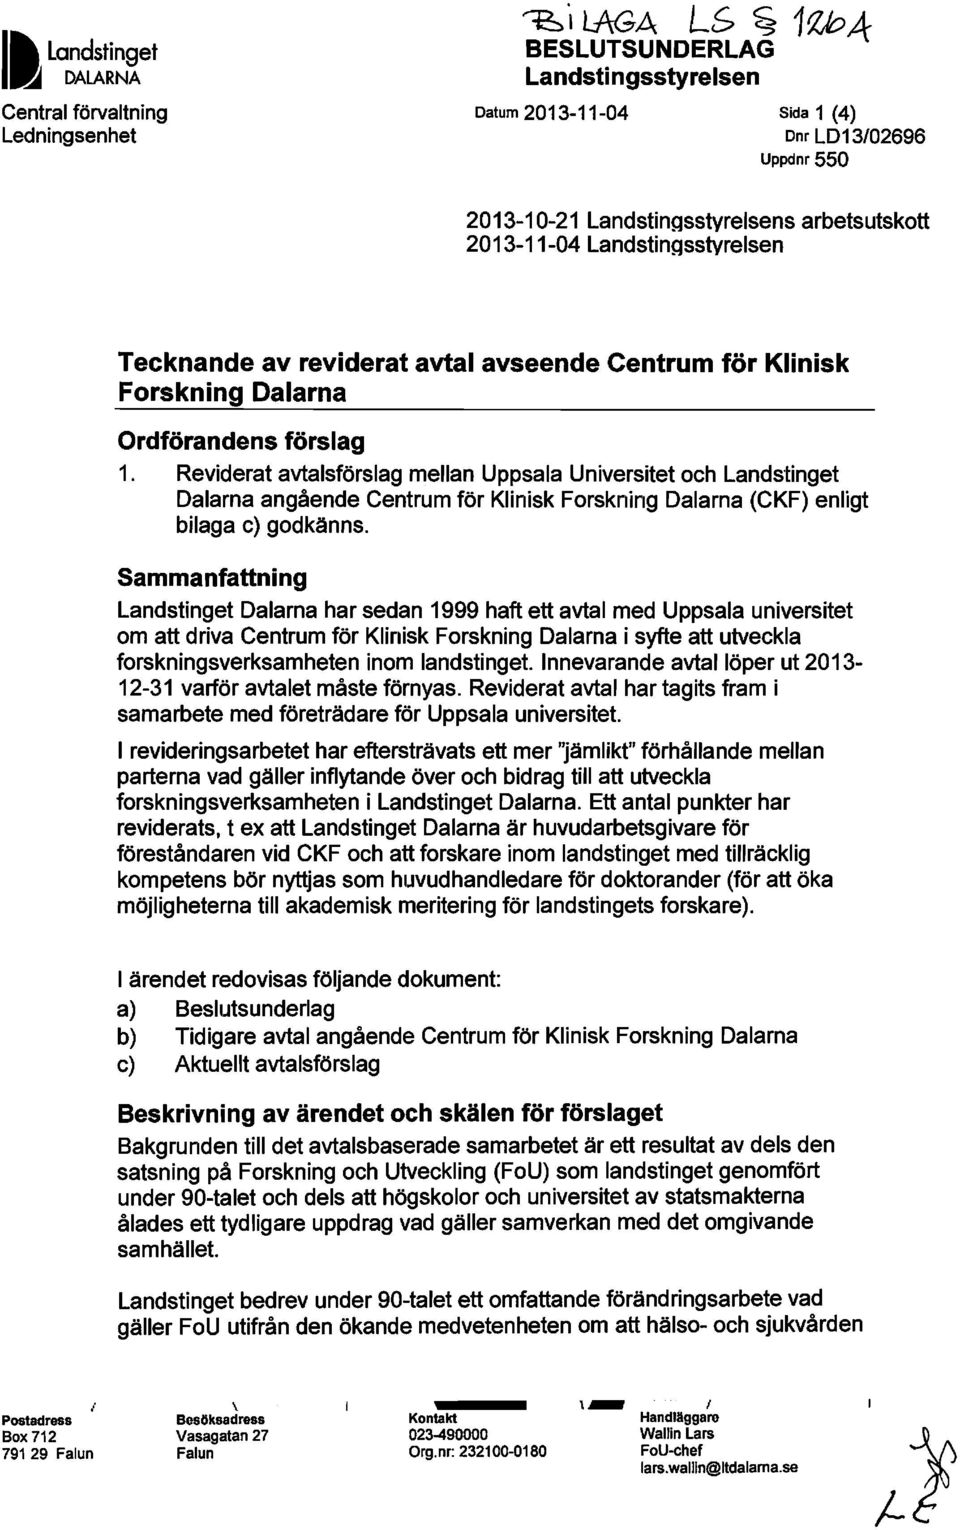 Reviderat avtalsförslag mellan Uppsala Universitet och Landstinget Dalarna angående Centrum för Klinisk Forskning Dalarna (CKF) enligt bilaga c) godkänns.